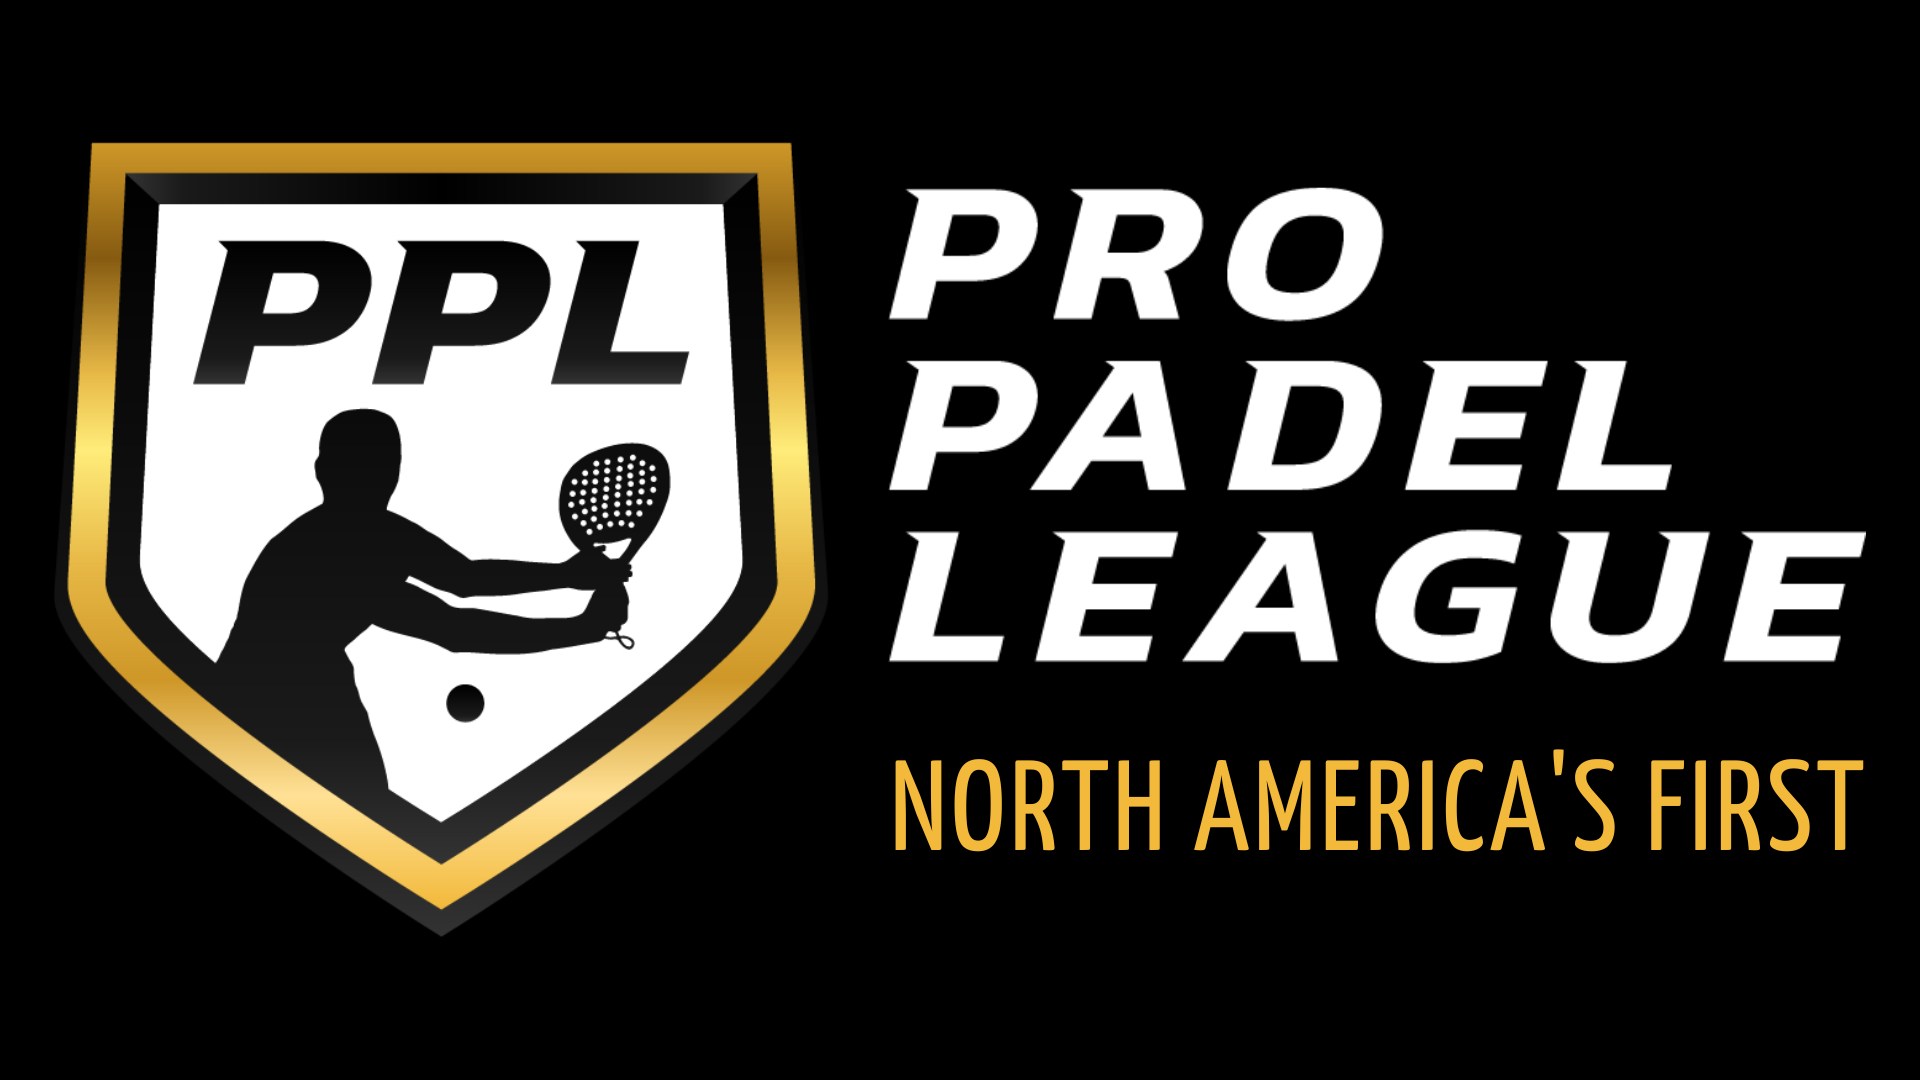 De proffesional Padel League wordt gelanceerd in de VS / Canada